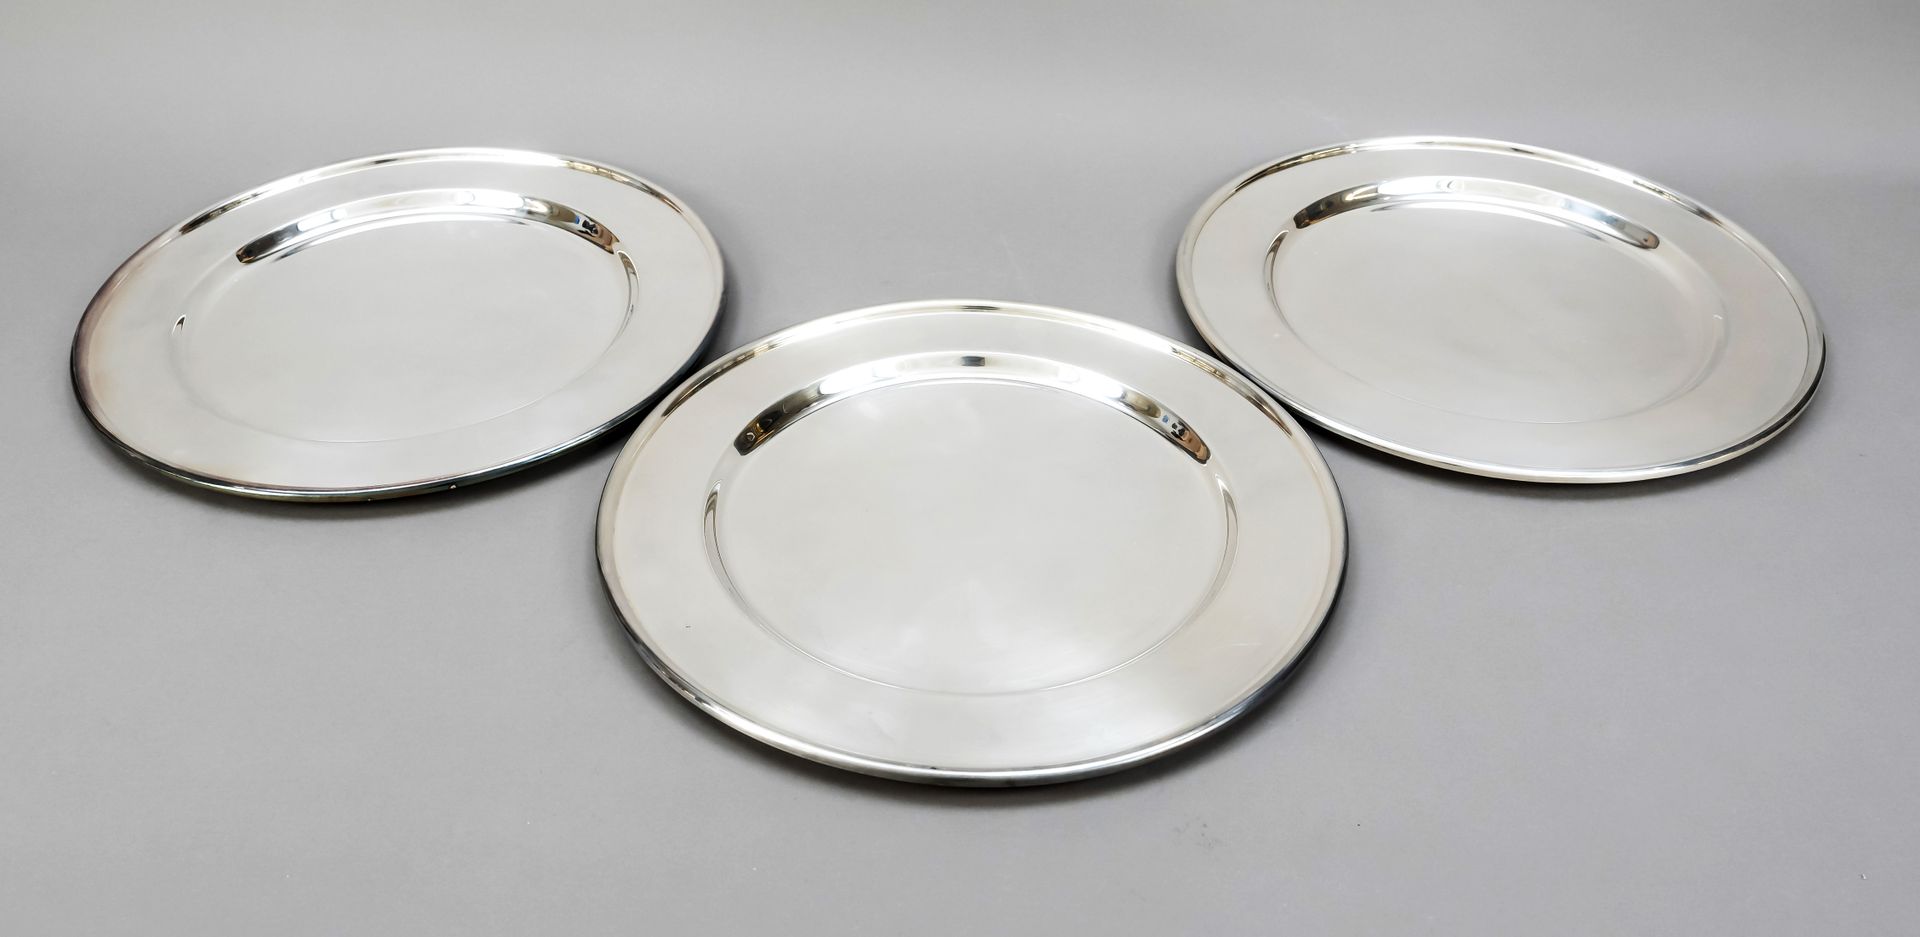 Null 五个餐垫，意大利，20世纪，纯银925/000，光滑，略微成型的形式，直径31厘米，约4000克